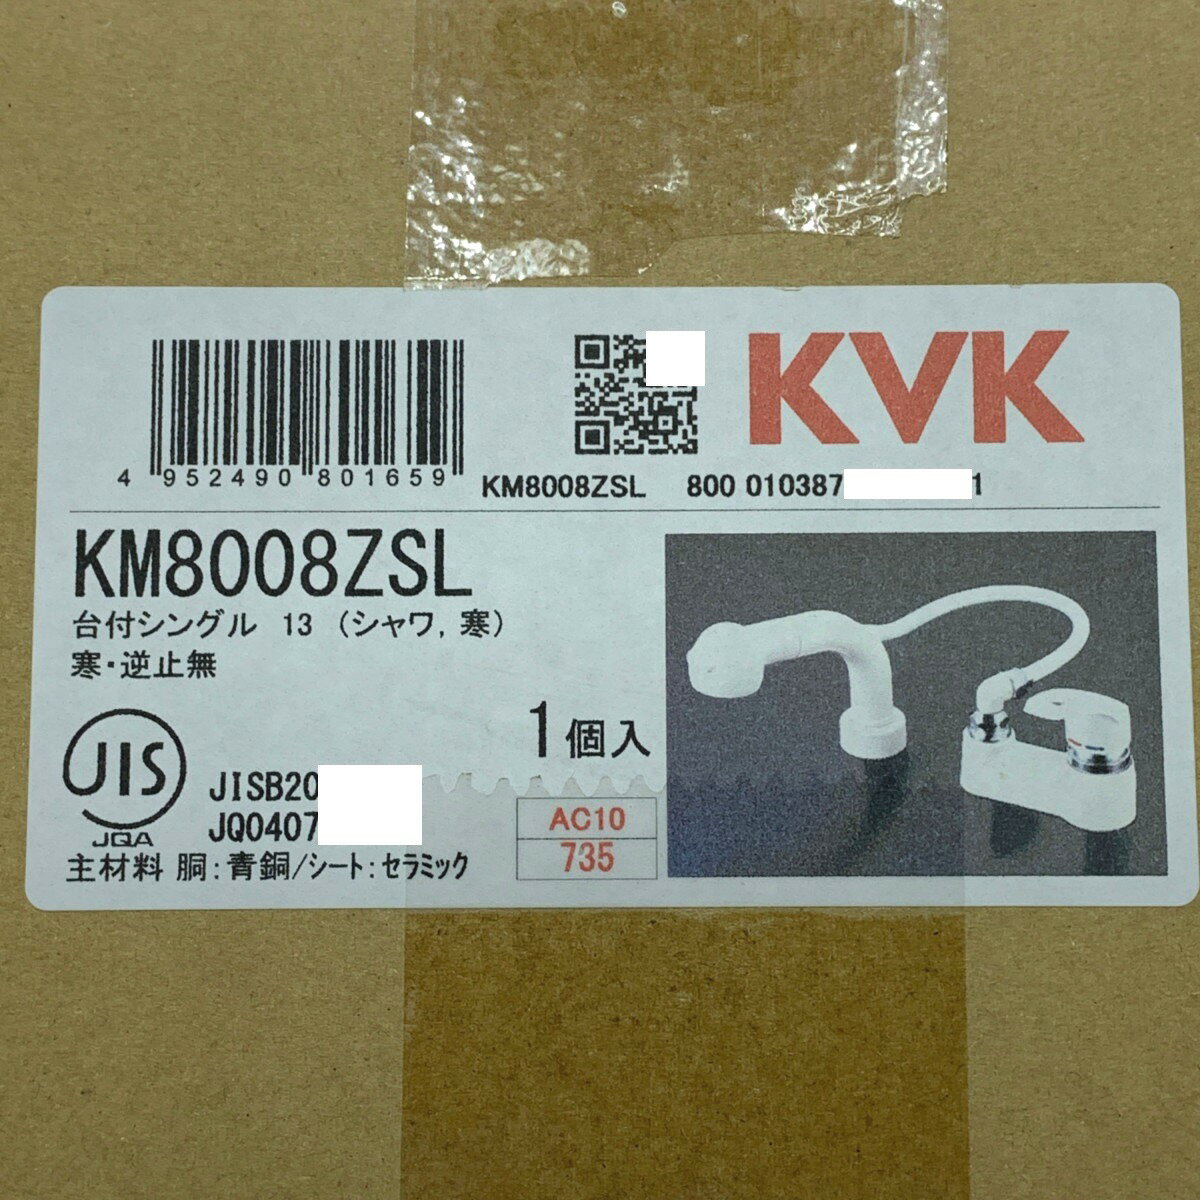 ▽▽【中古】KVK 洗髪シャワー 台付シングル ゴム栓なし 寒冷地用 KM8008ZSL 未開封品 Nランク